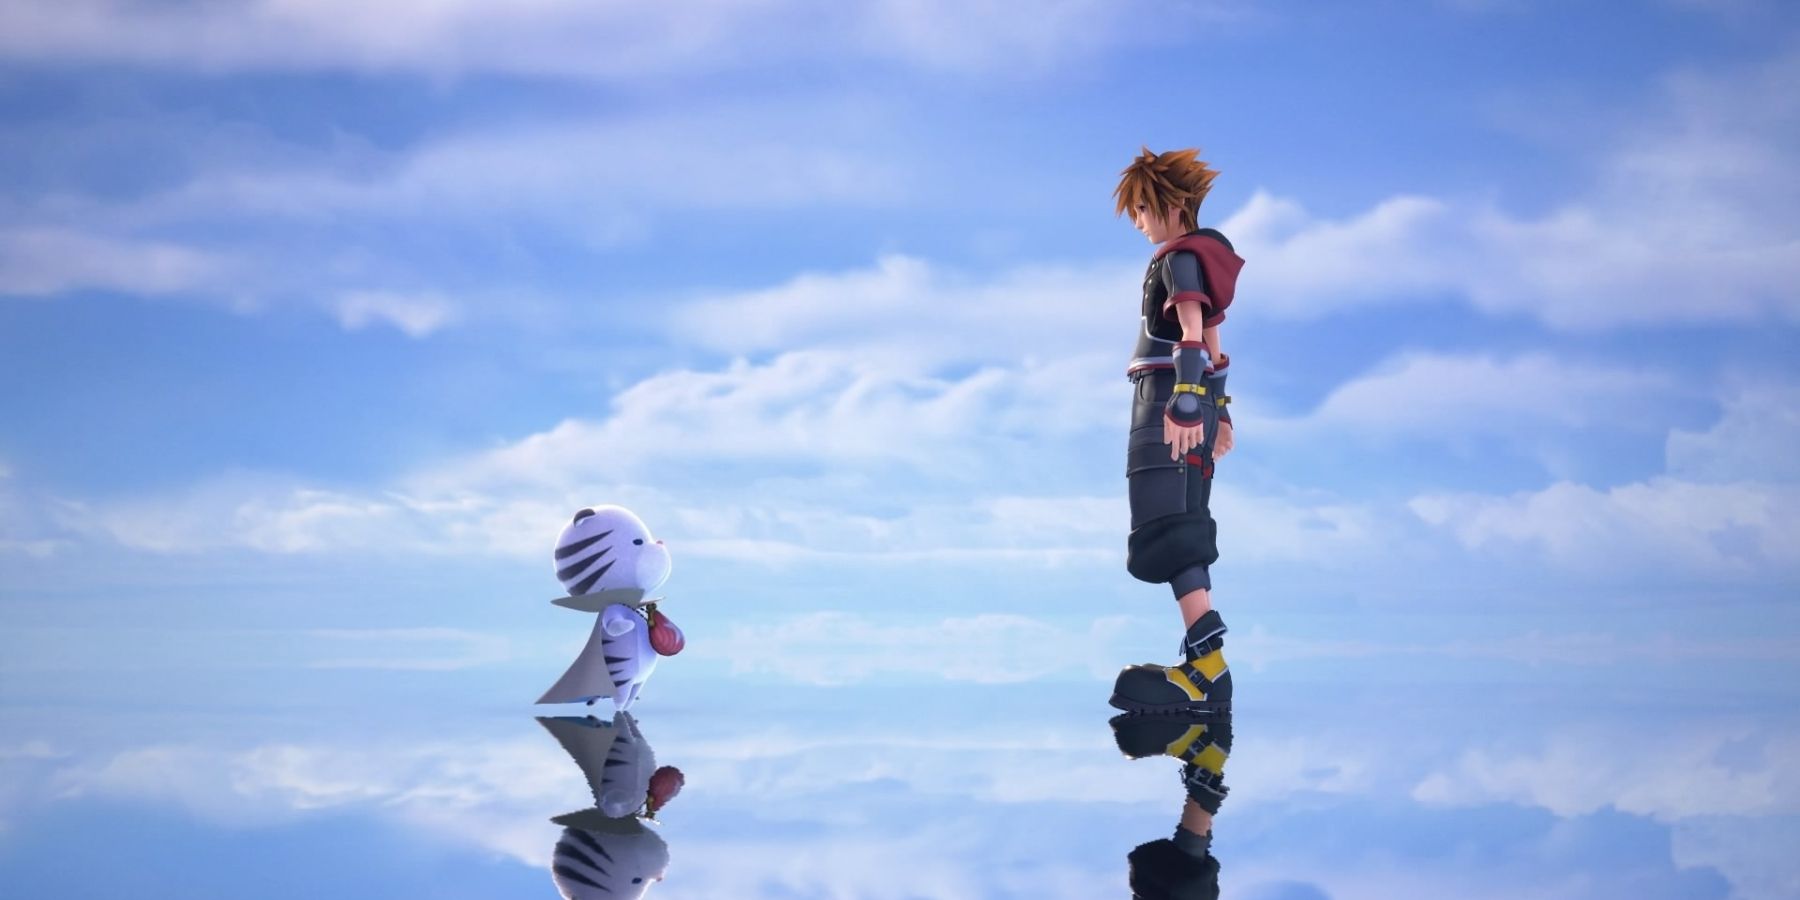 Chirithy meets Sora in Kingdom Hearts 3